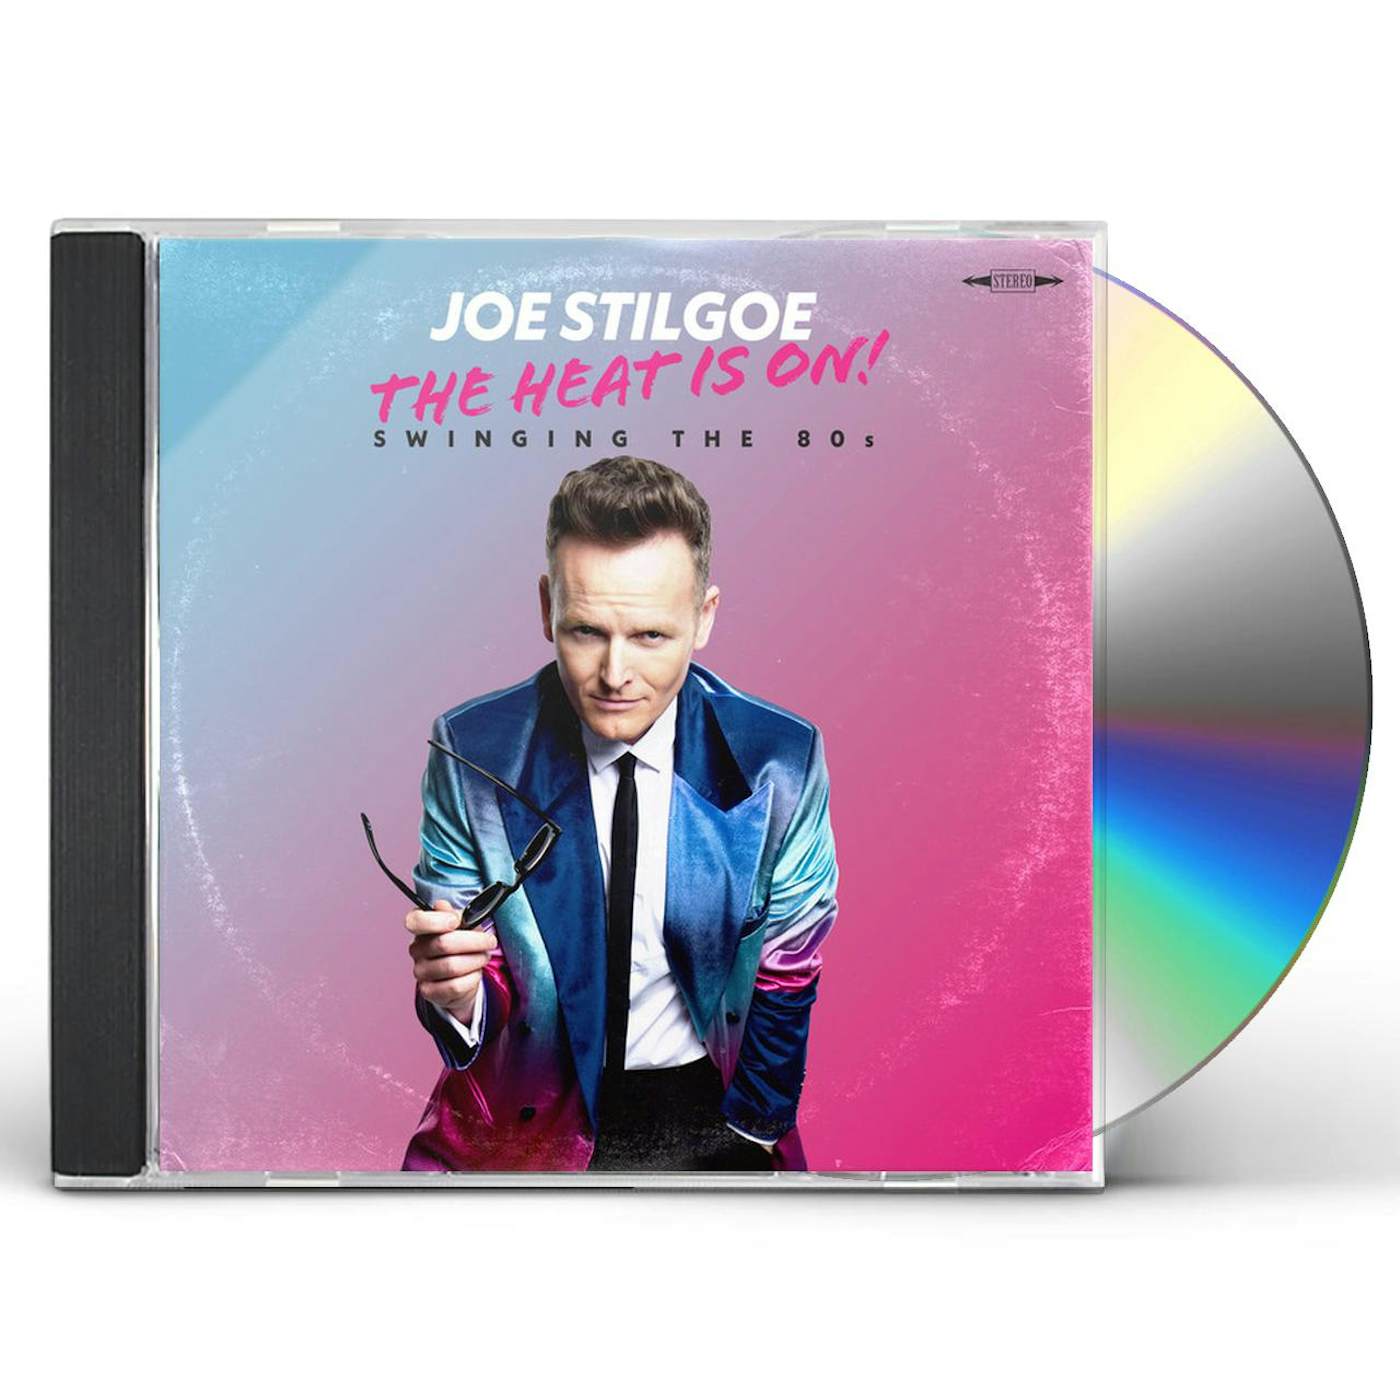 Joe Stilgoe THE HEAT IS ON: SWINGING THE 80S CD